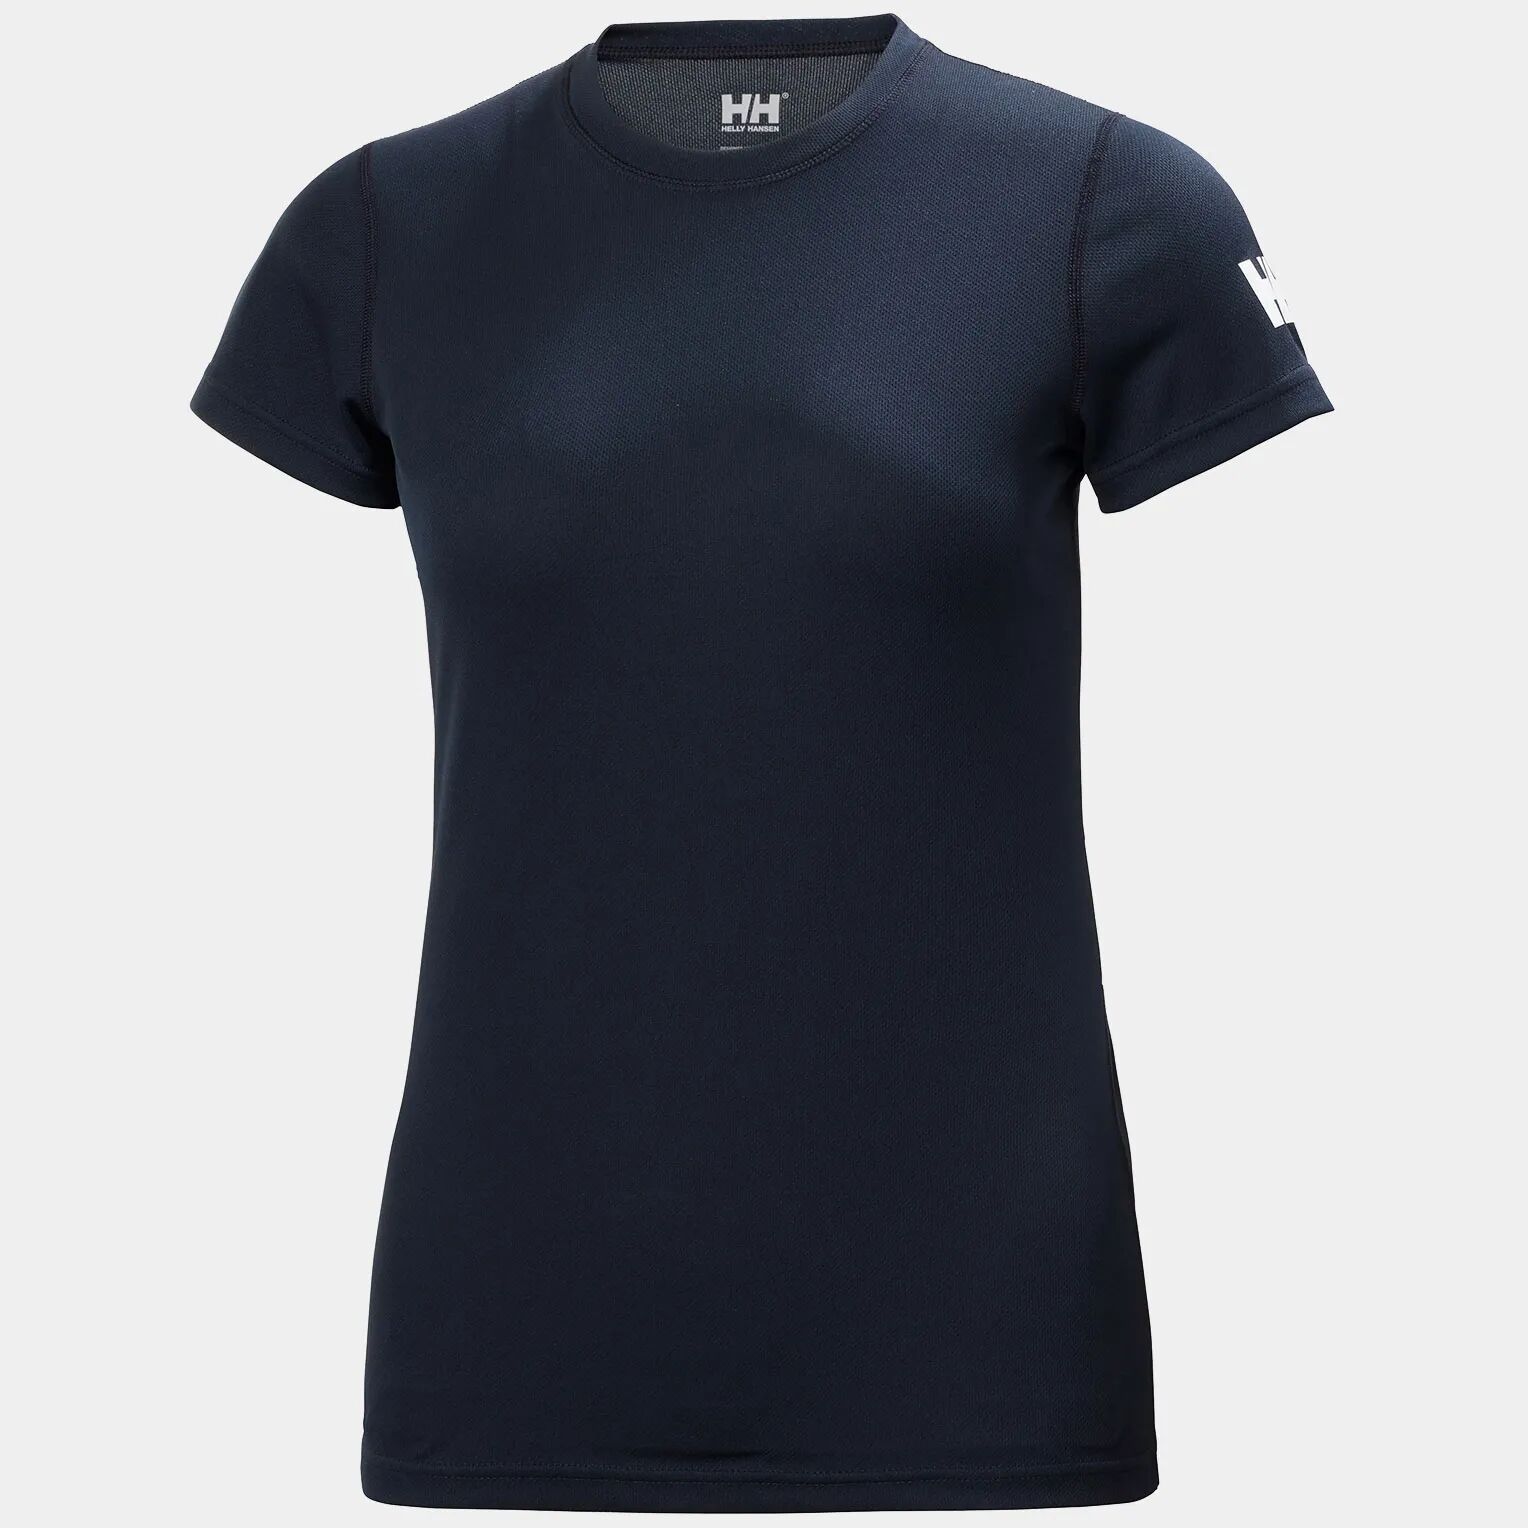 Helly Hansen Women's HH Tech Lightweight T-Shirt Navy S - Navy Blue - Female